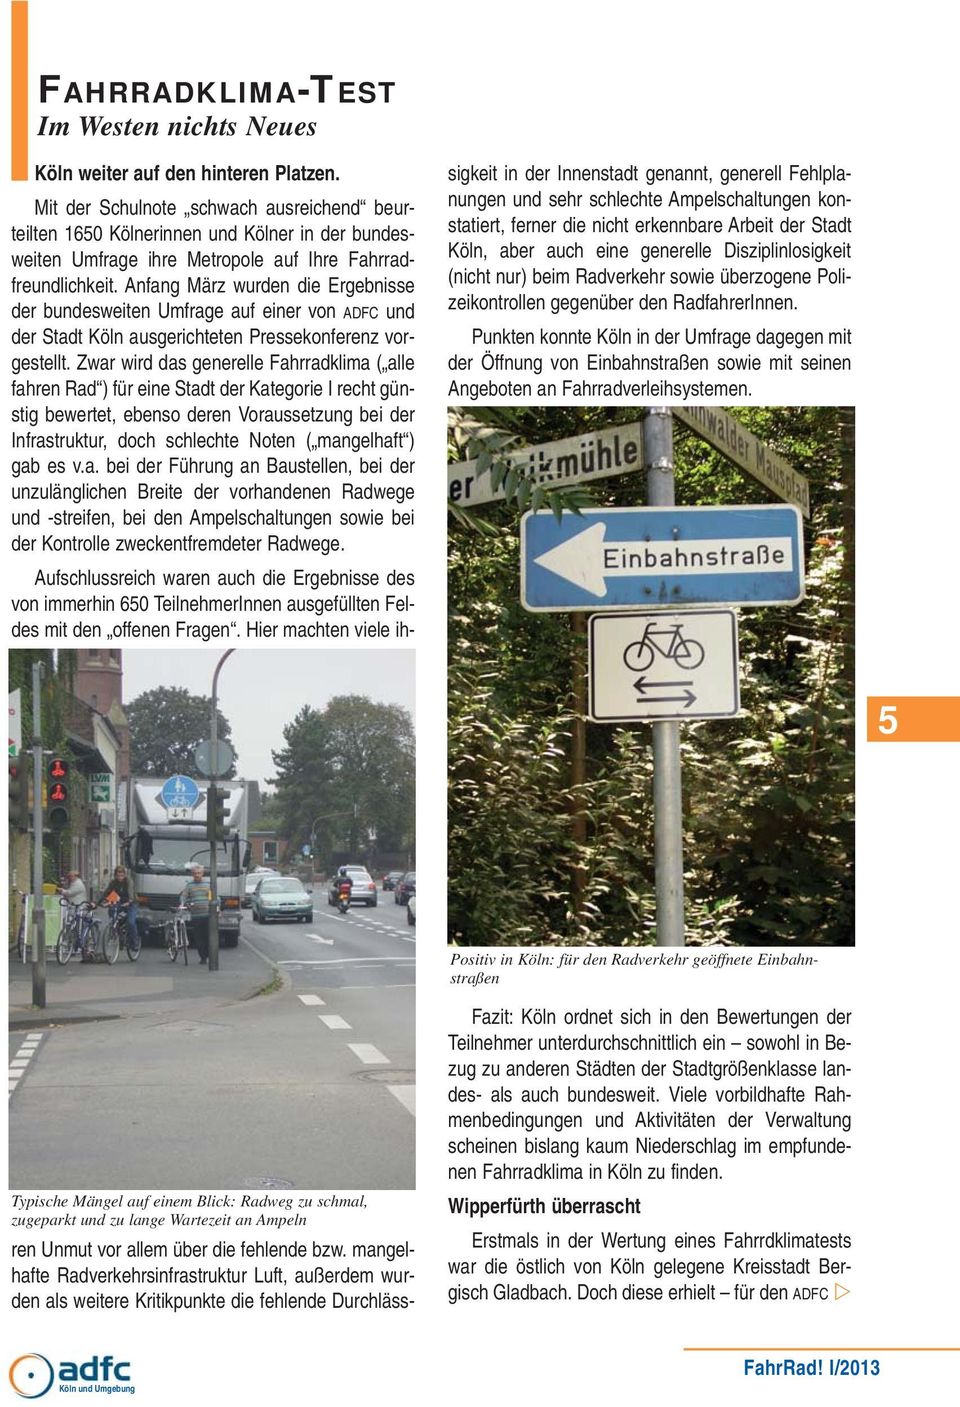 konstatiert, ferner die nicht erkennbare Arbeit der Stadt Köln, aber auch eine generelle Disziplinlosigkeit (nicht nur) beim Radverkehr sowie überzogene Polizeikontrollen gegenüber den RadfahrerInnen.